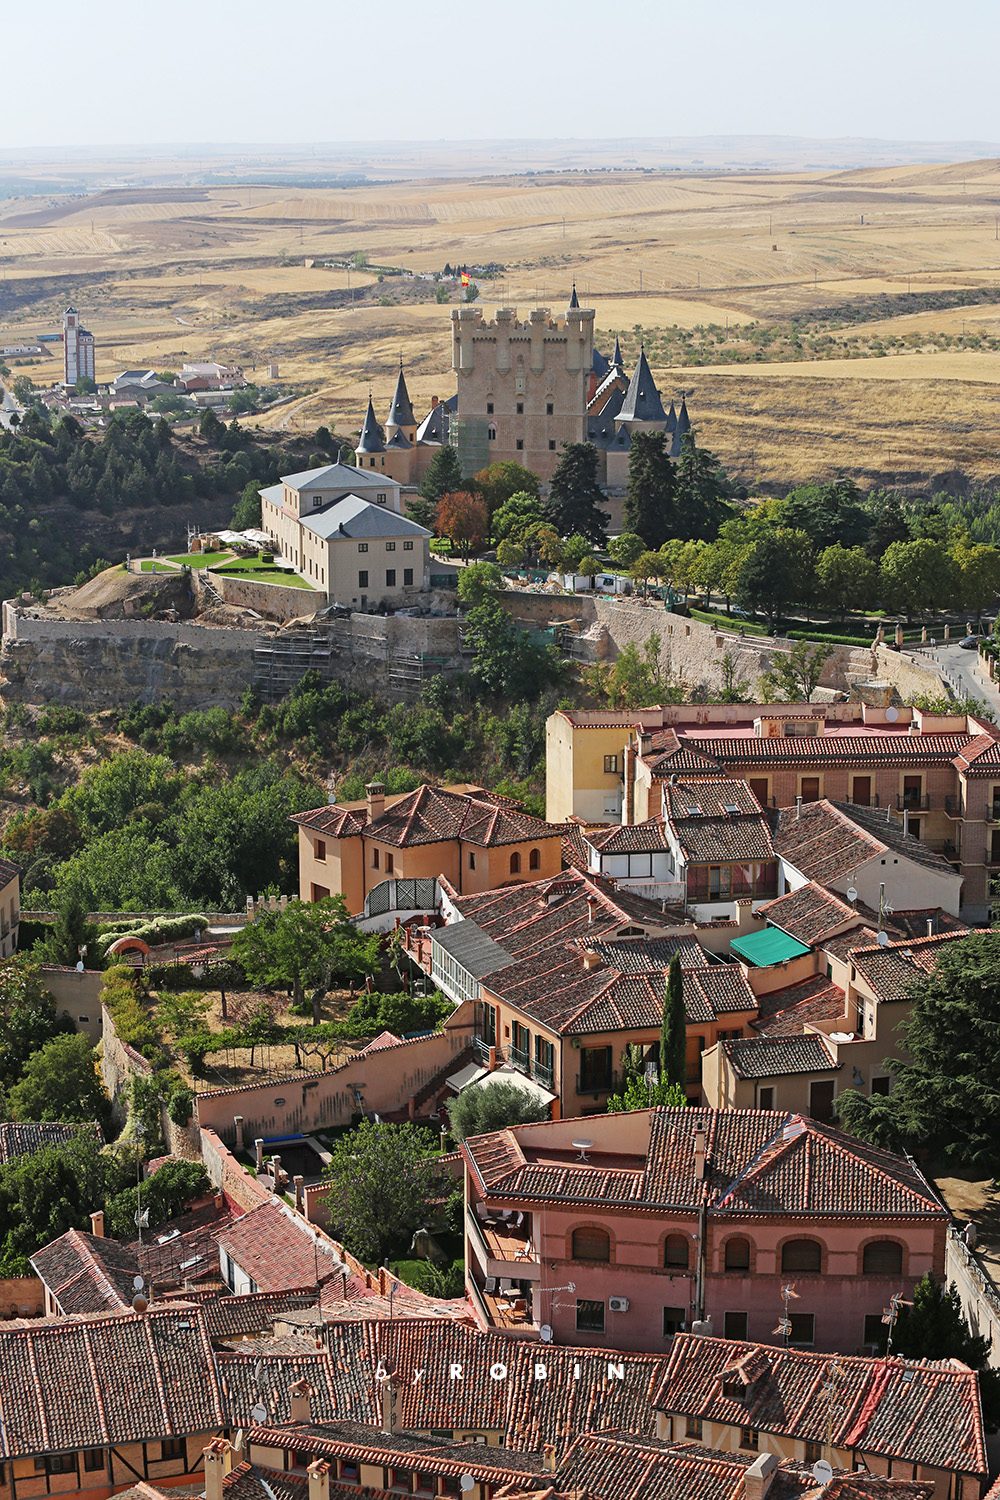 自驾西班牙北部—寻找睡美人城堡